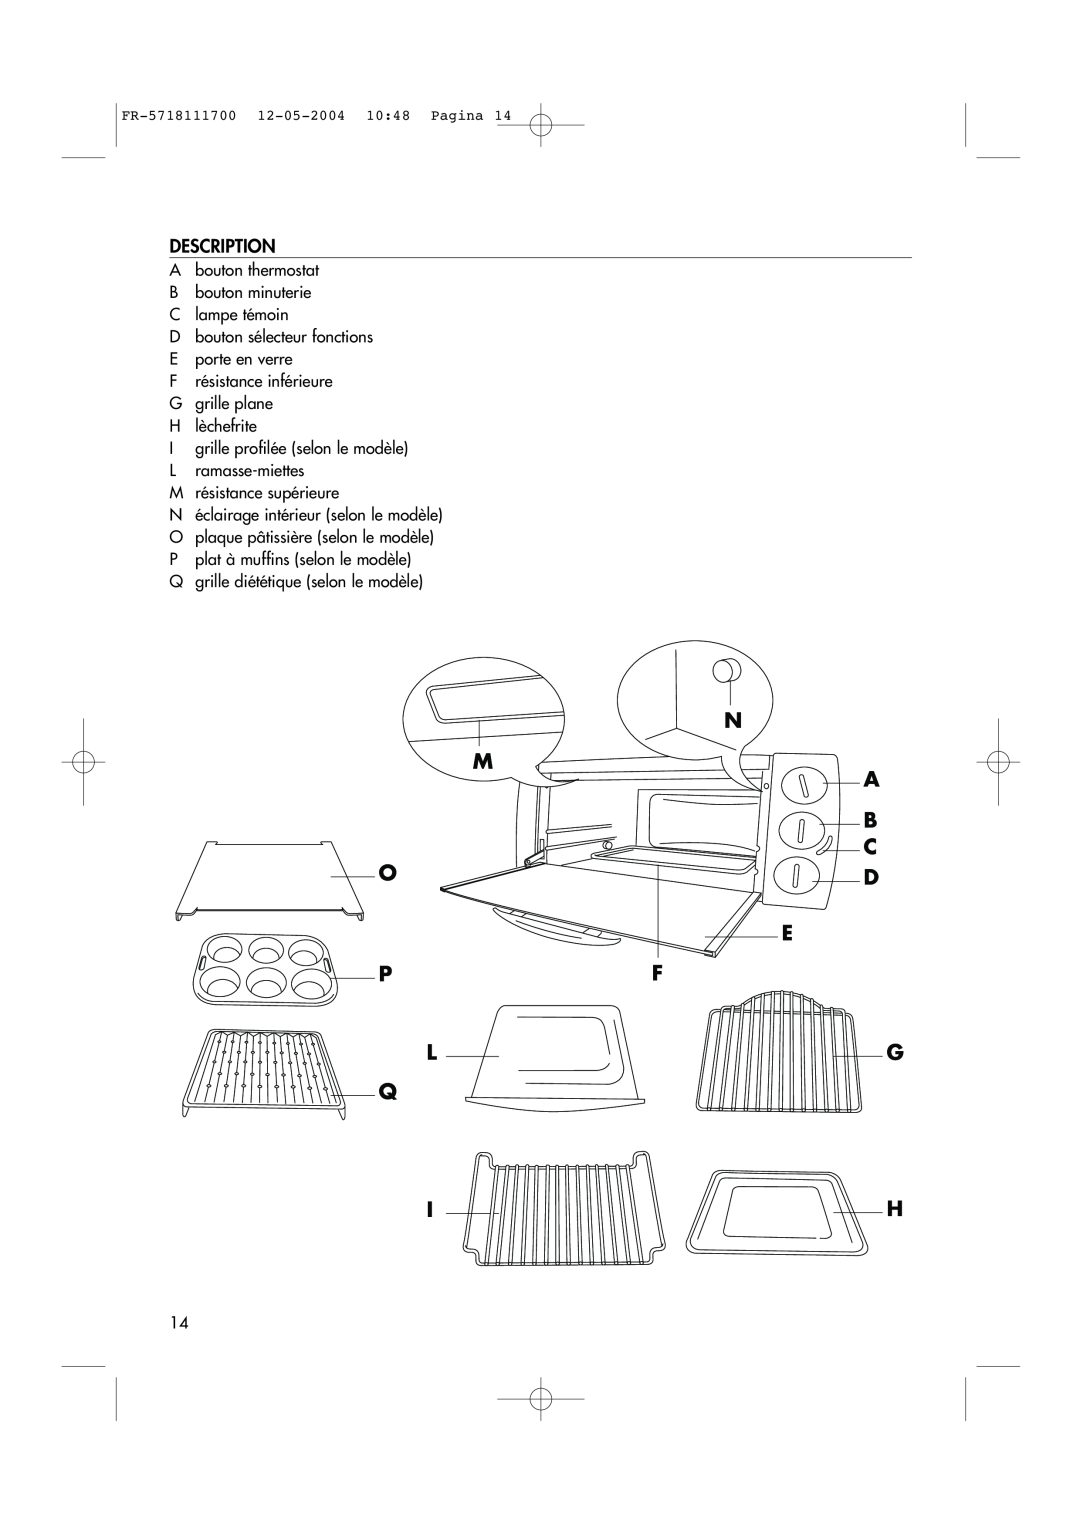 DeLonghi EO1200 Series manual Description, N M A B C, E Pf Lg Q Ih 